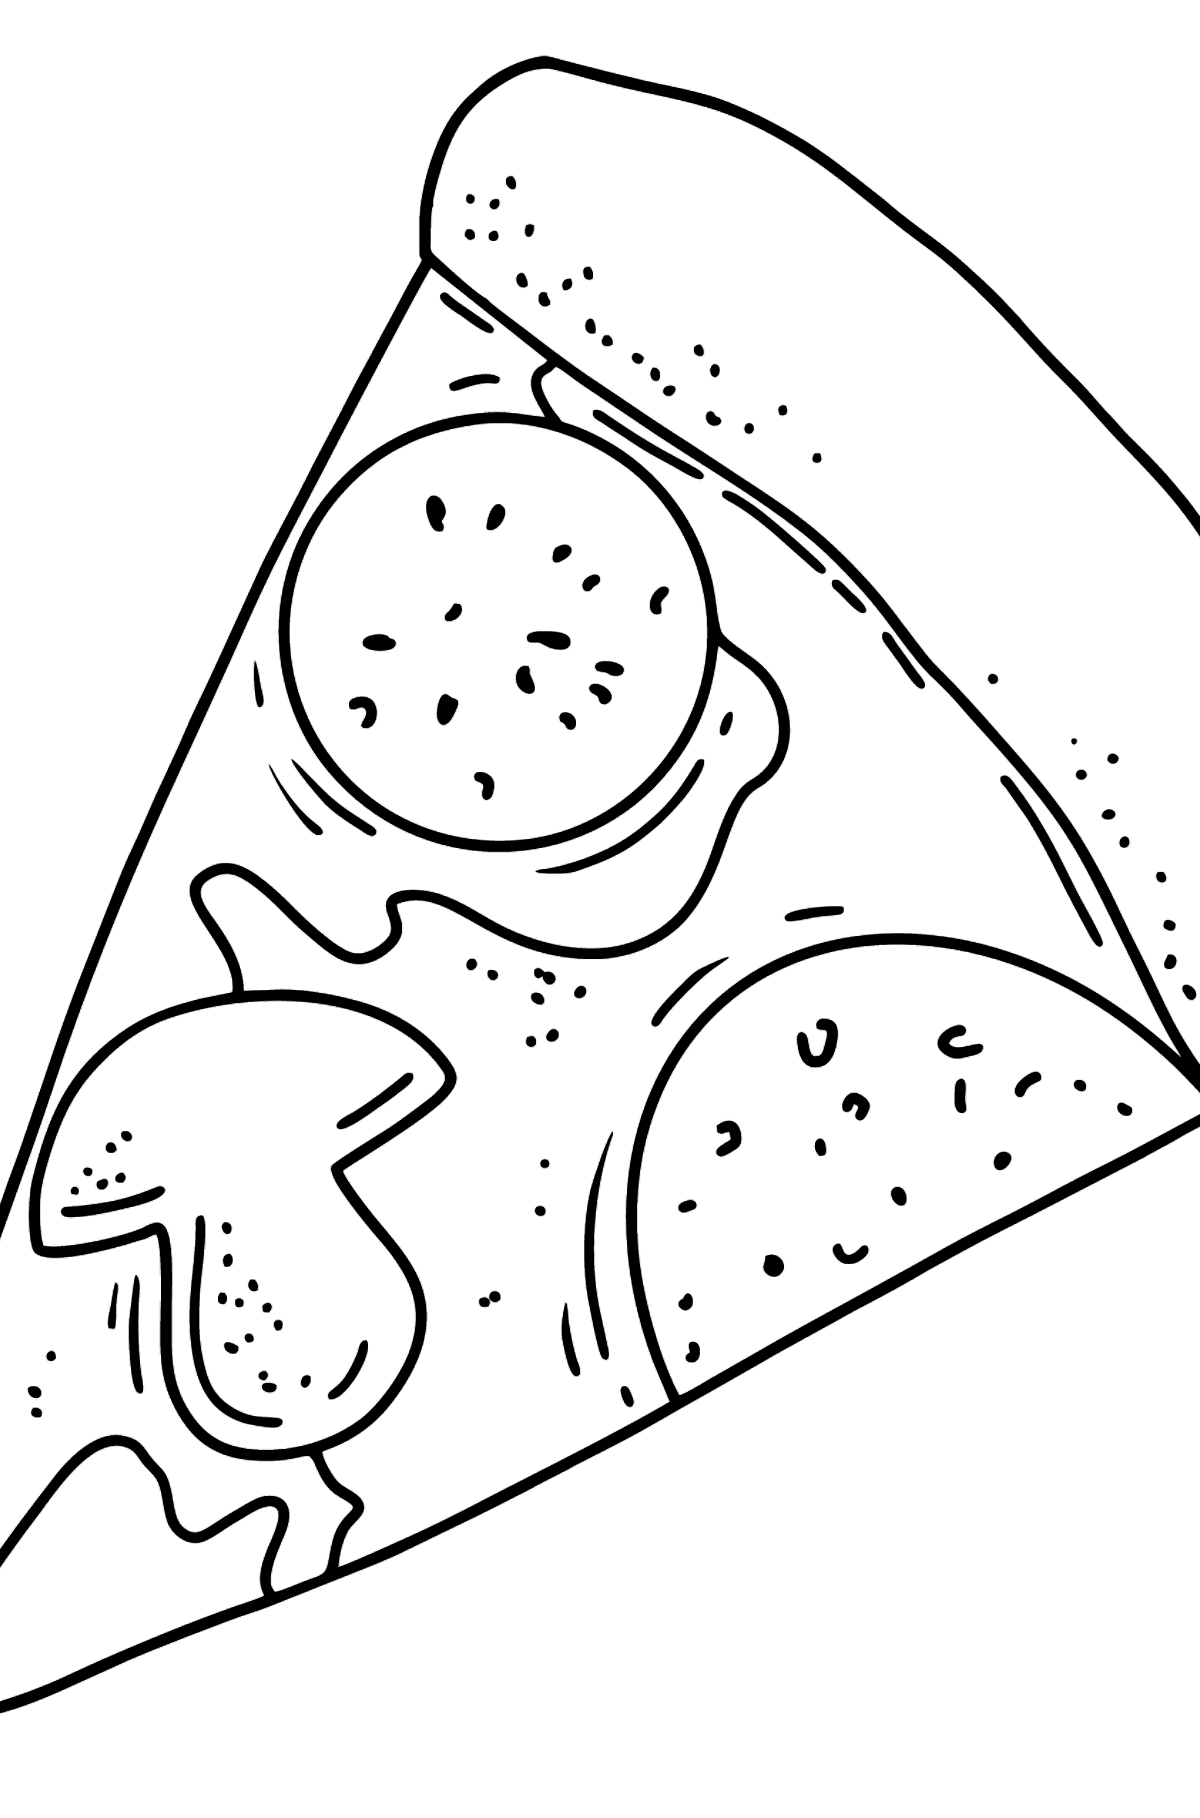 Kleurplaat pizza salami en champignons - kleurplaten voor kinderen